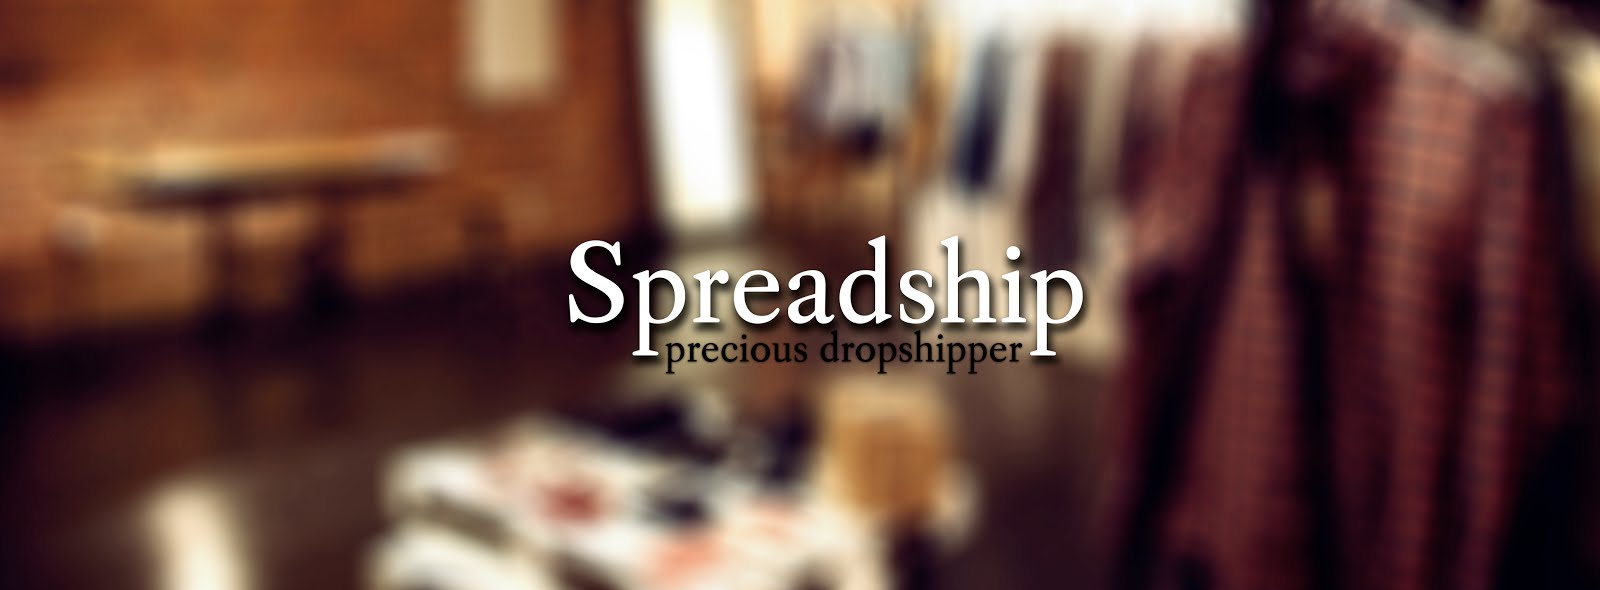 Spreadship